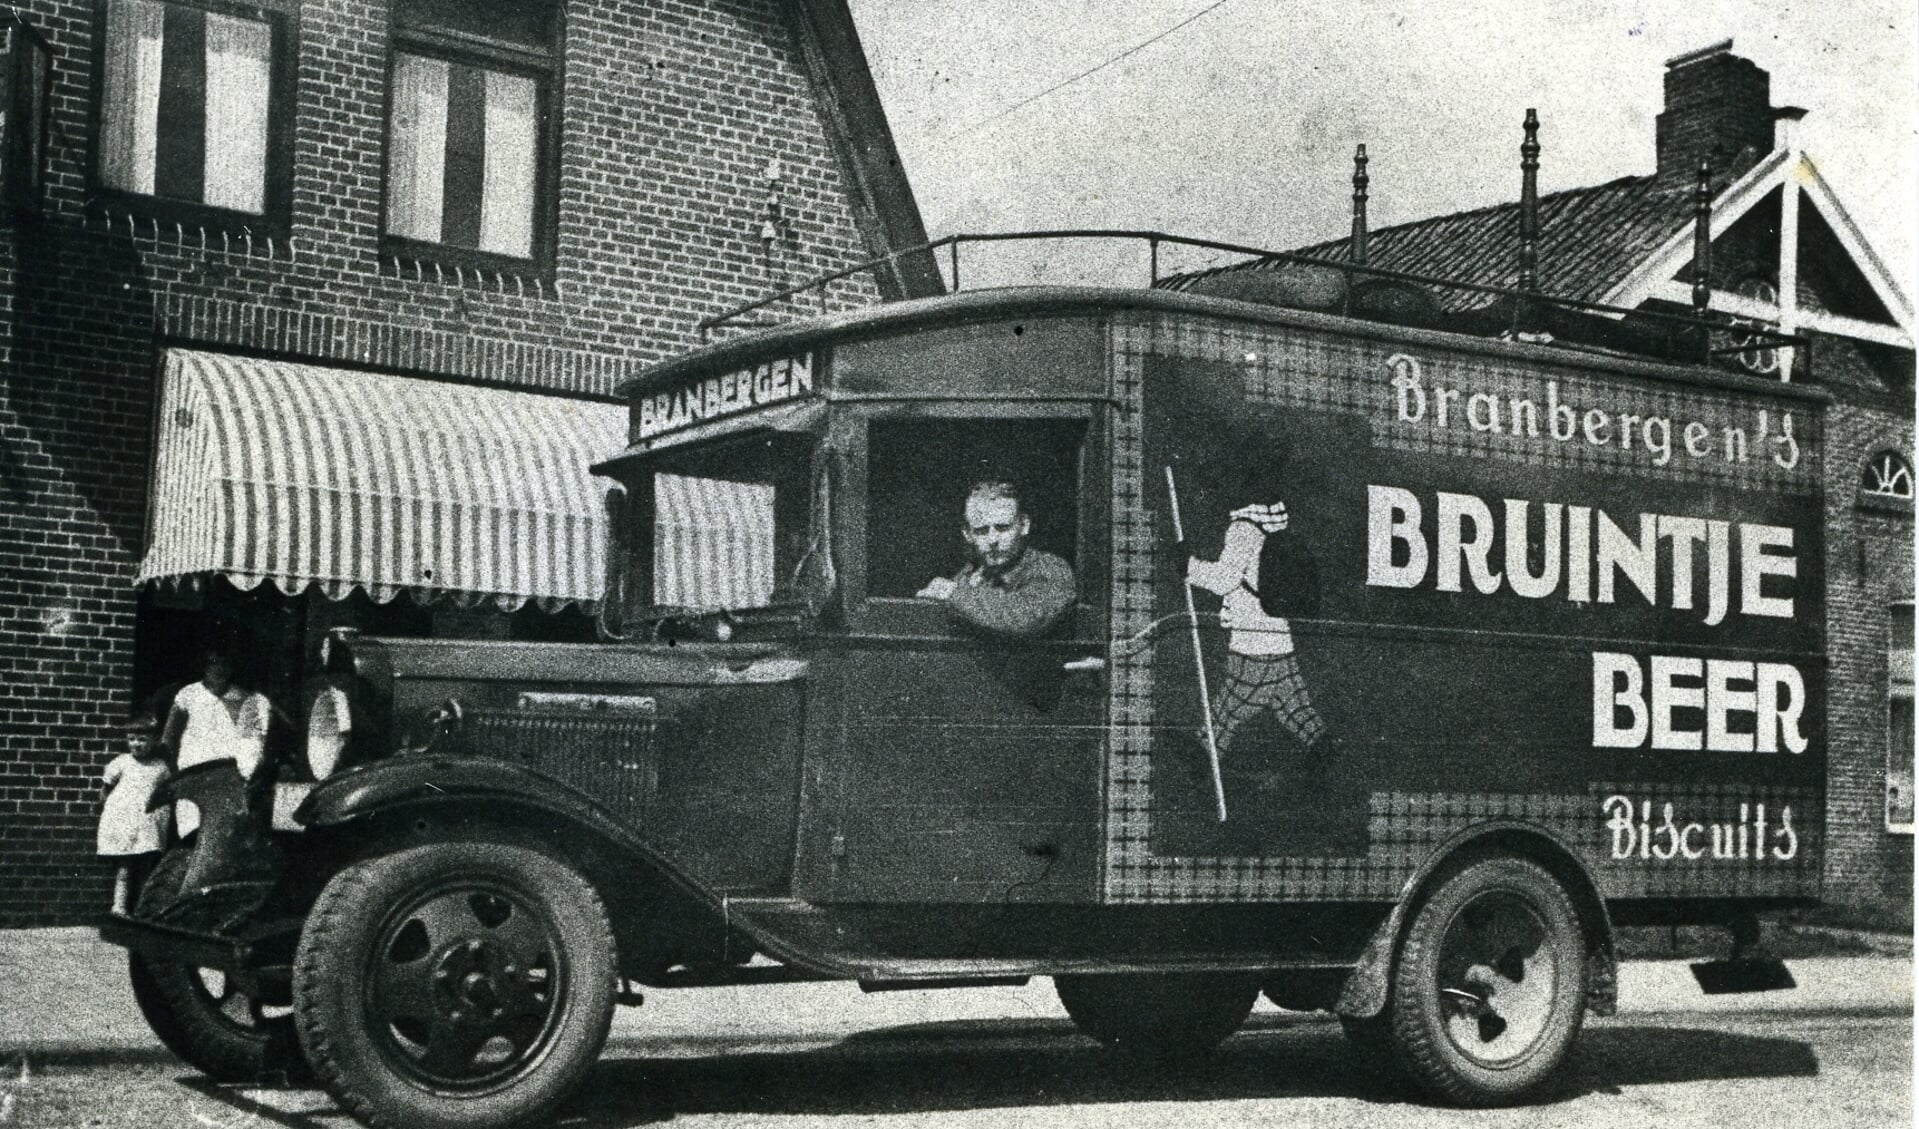 Bruintje Beer verscheen ook op de transportmiddelen van de koekjesfabriek Branbergen, zoals hier op een vrachtauto. (foto: collectie SHC)